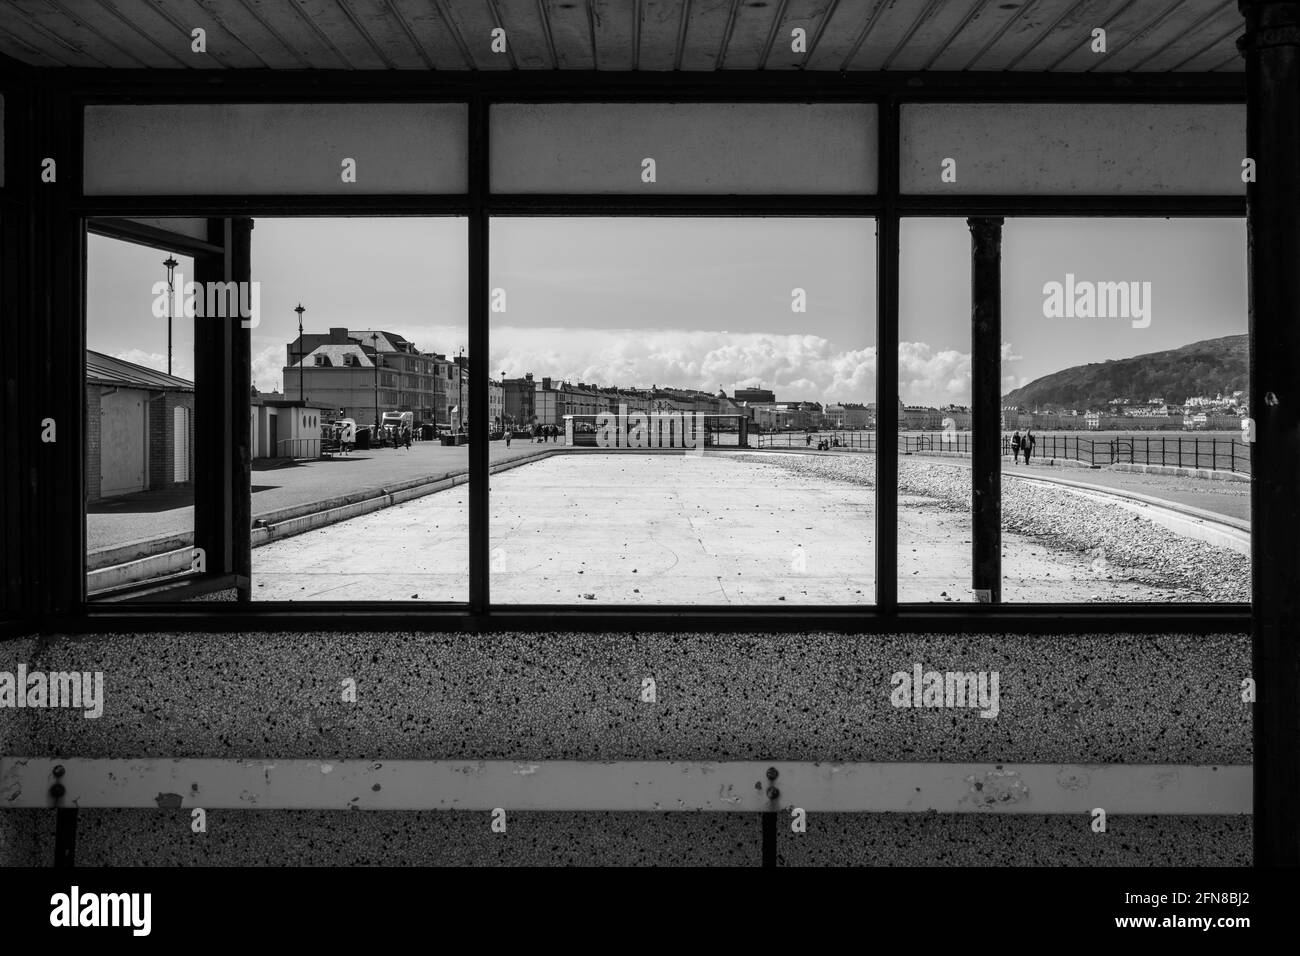 Ein Schwarz-Weiß-Foto, das das öffentliche Planschbecken zeigt In Llandudno aus einer Viewing-Galerie betrachtet liegt geleert und Lügen, die voller Erbsen abgelegt werden Stockfoto